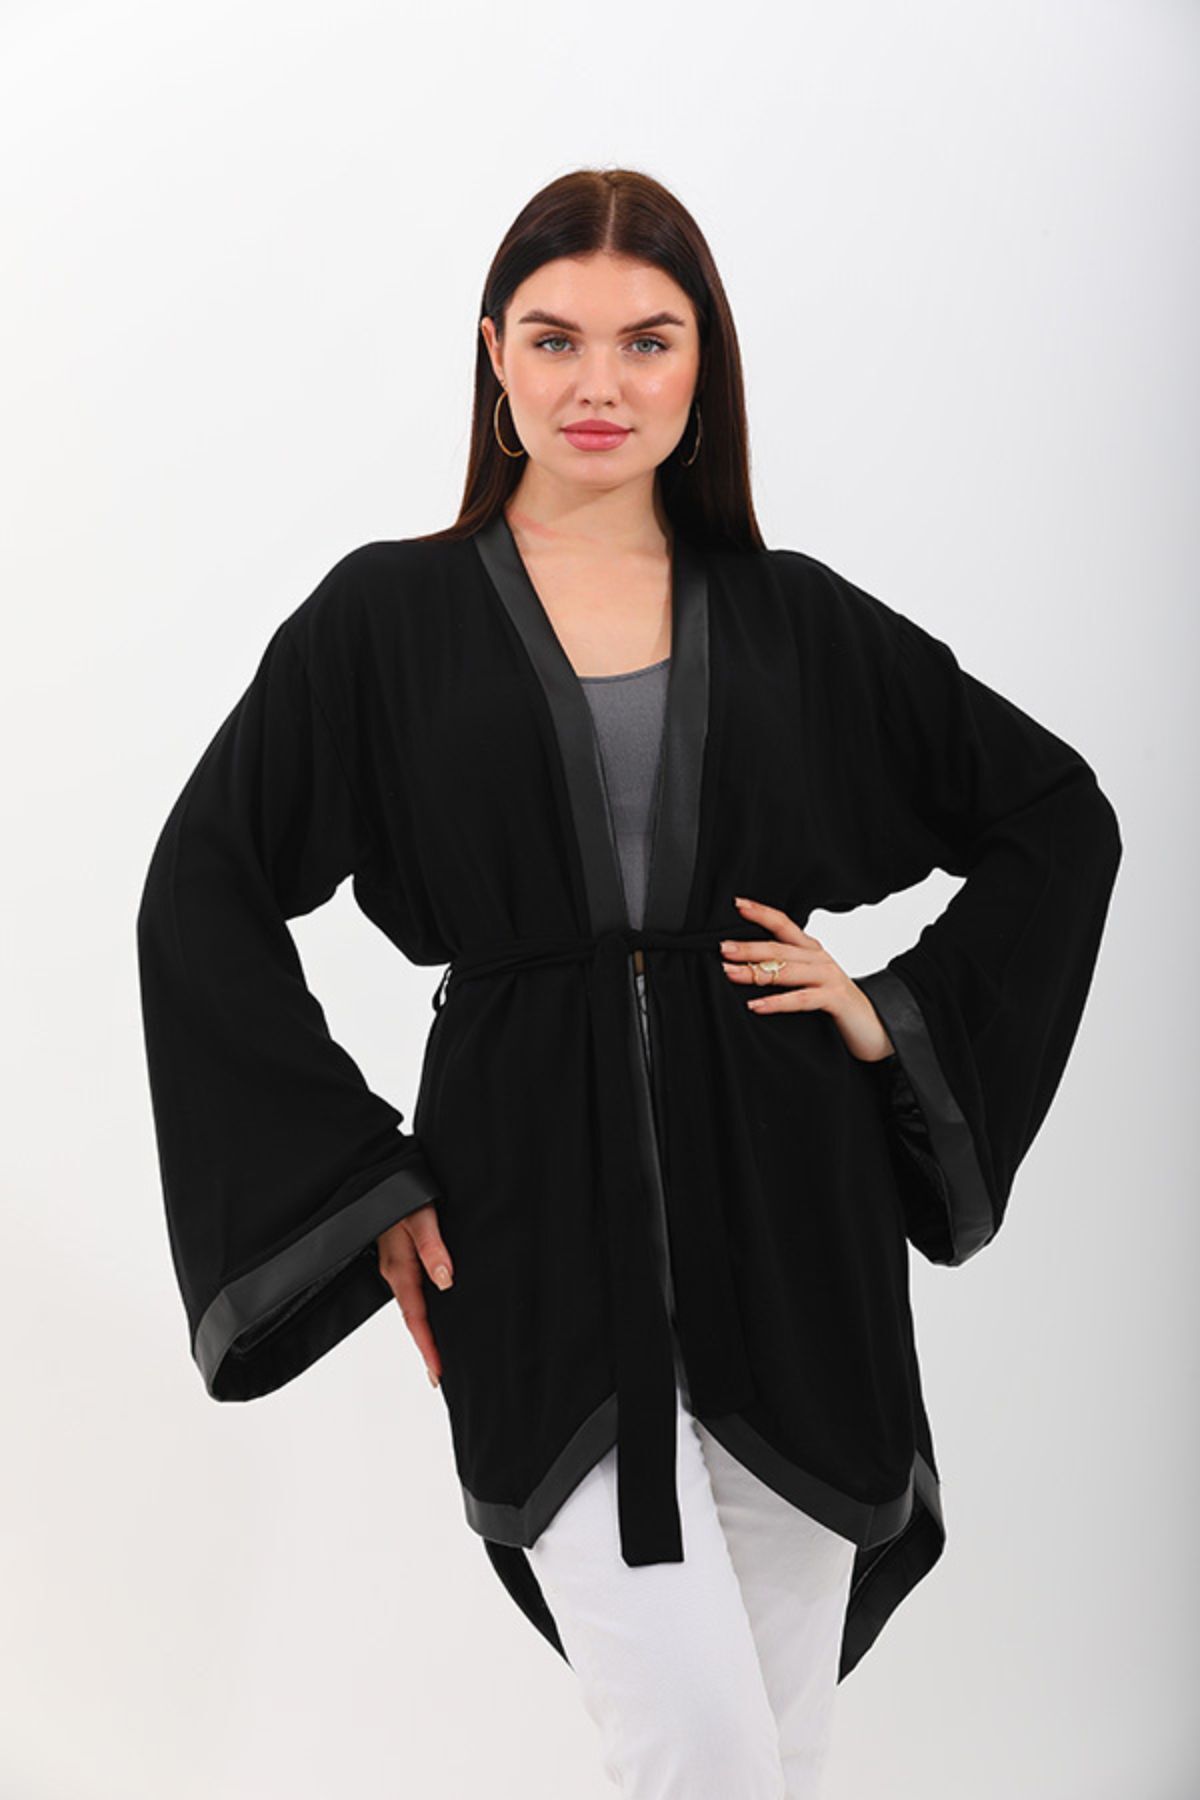 marecaldo Yazlık Kadın Giyim Modası Avangart Kimono Modeli Eleganza Siyah 1 Desen